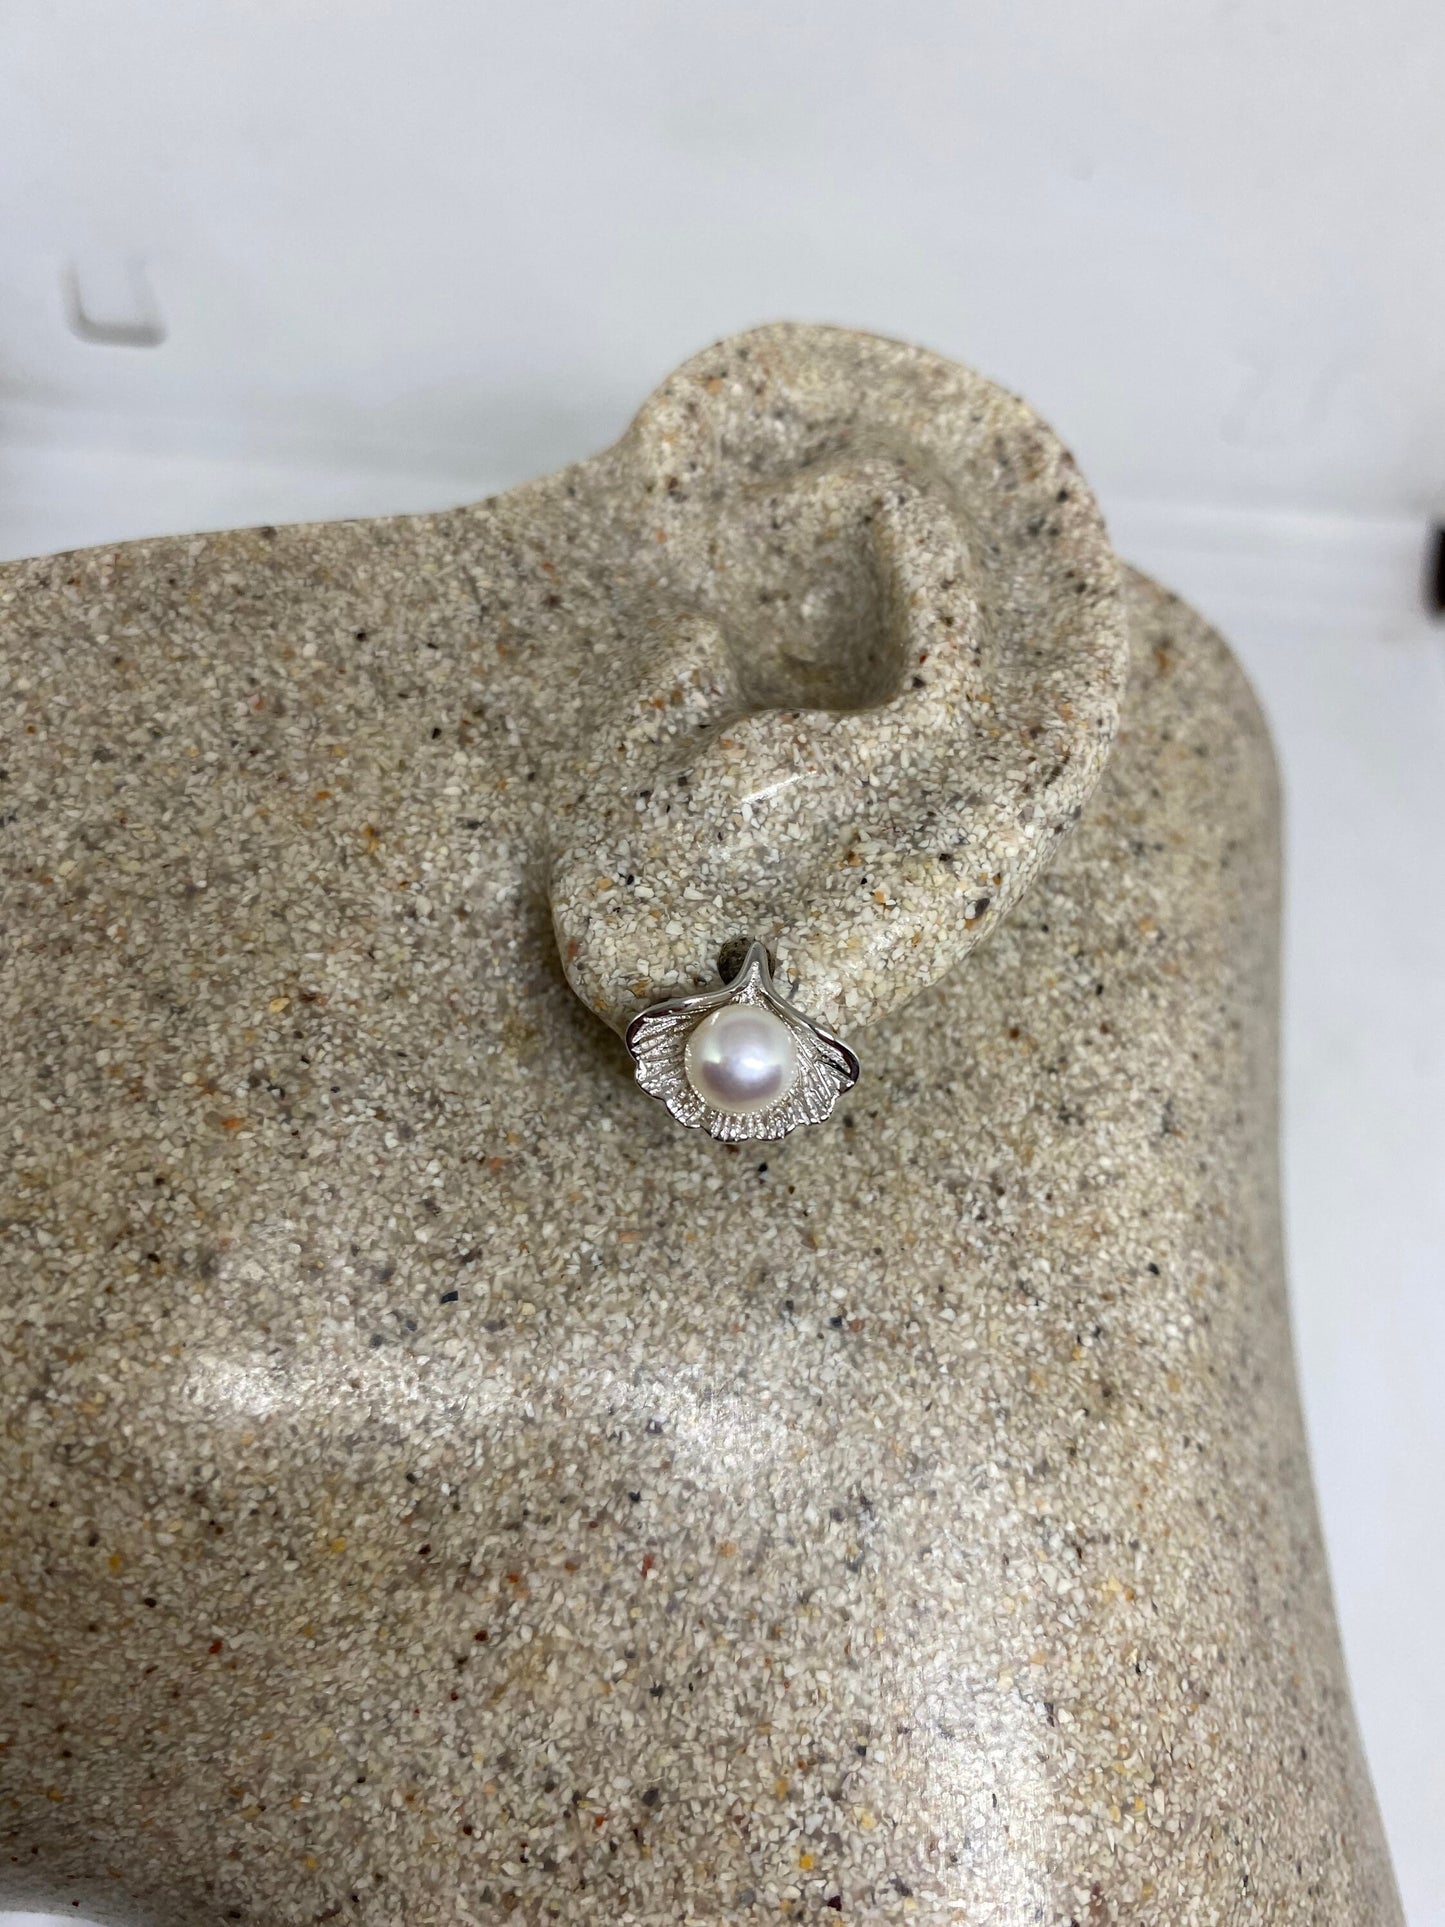 Vintage Genuine Pearl 925 Sterling Silver Stud Earrings